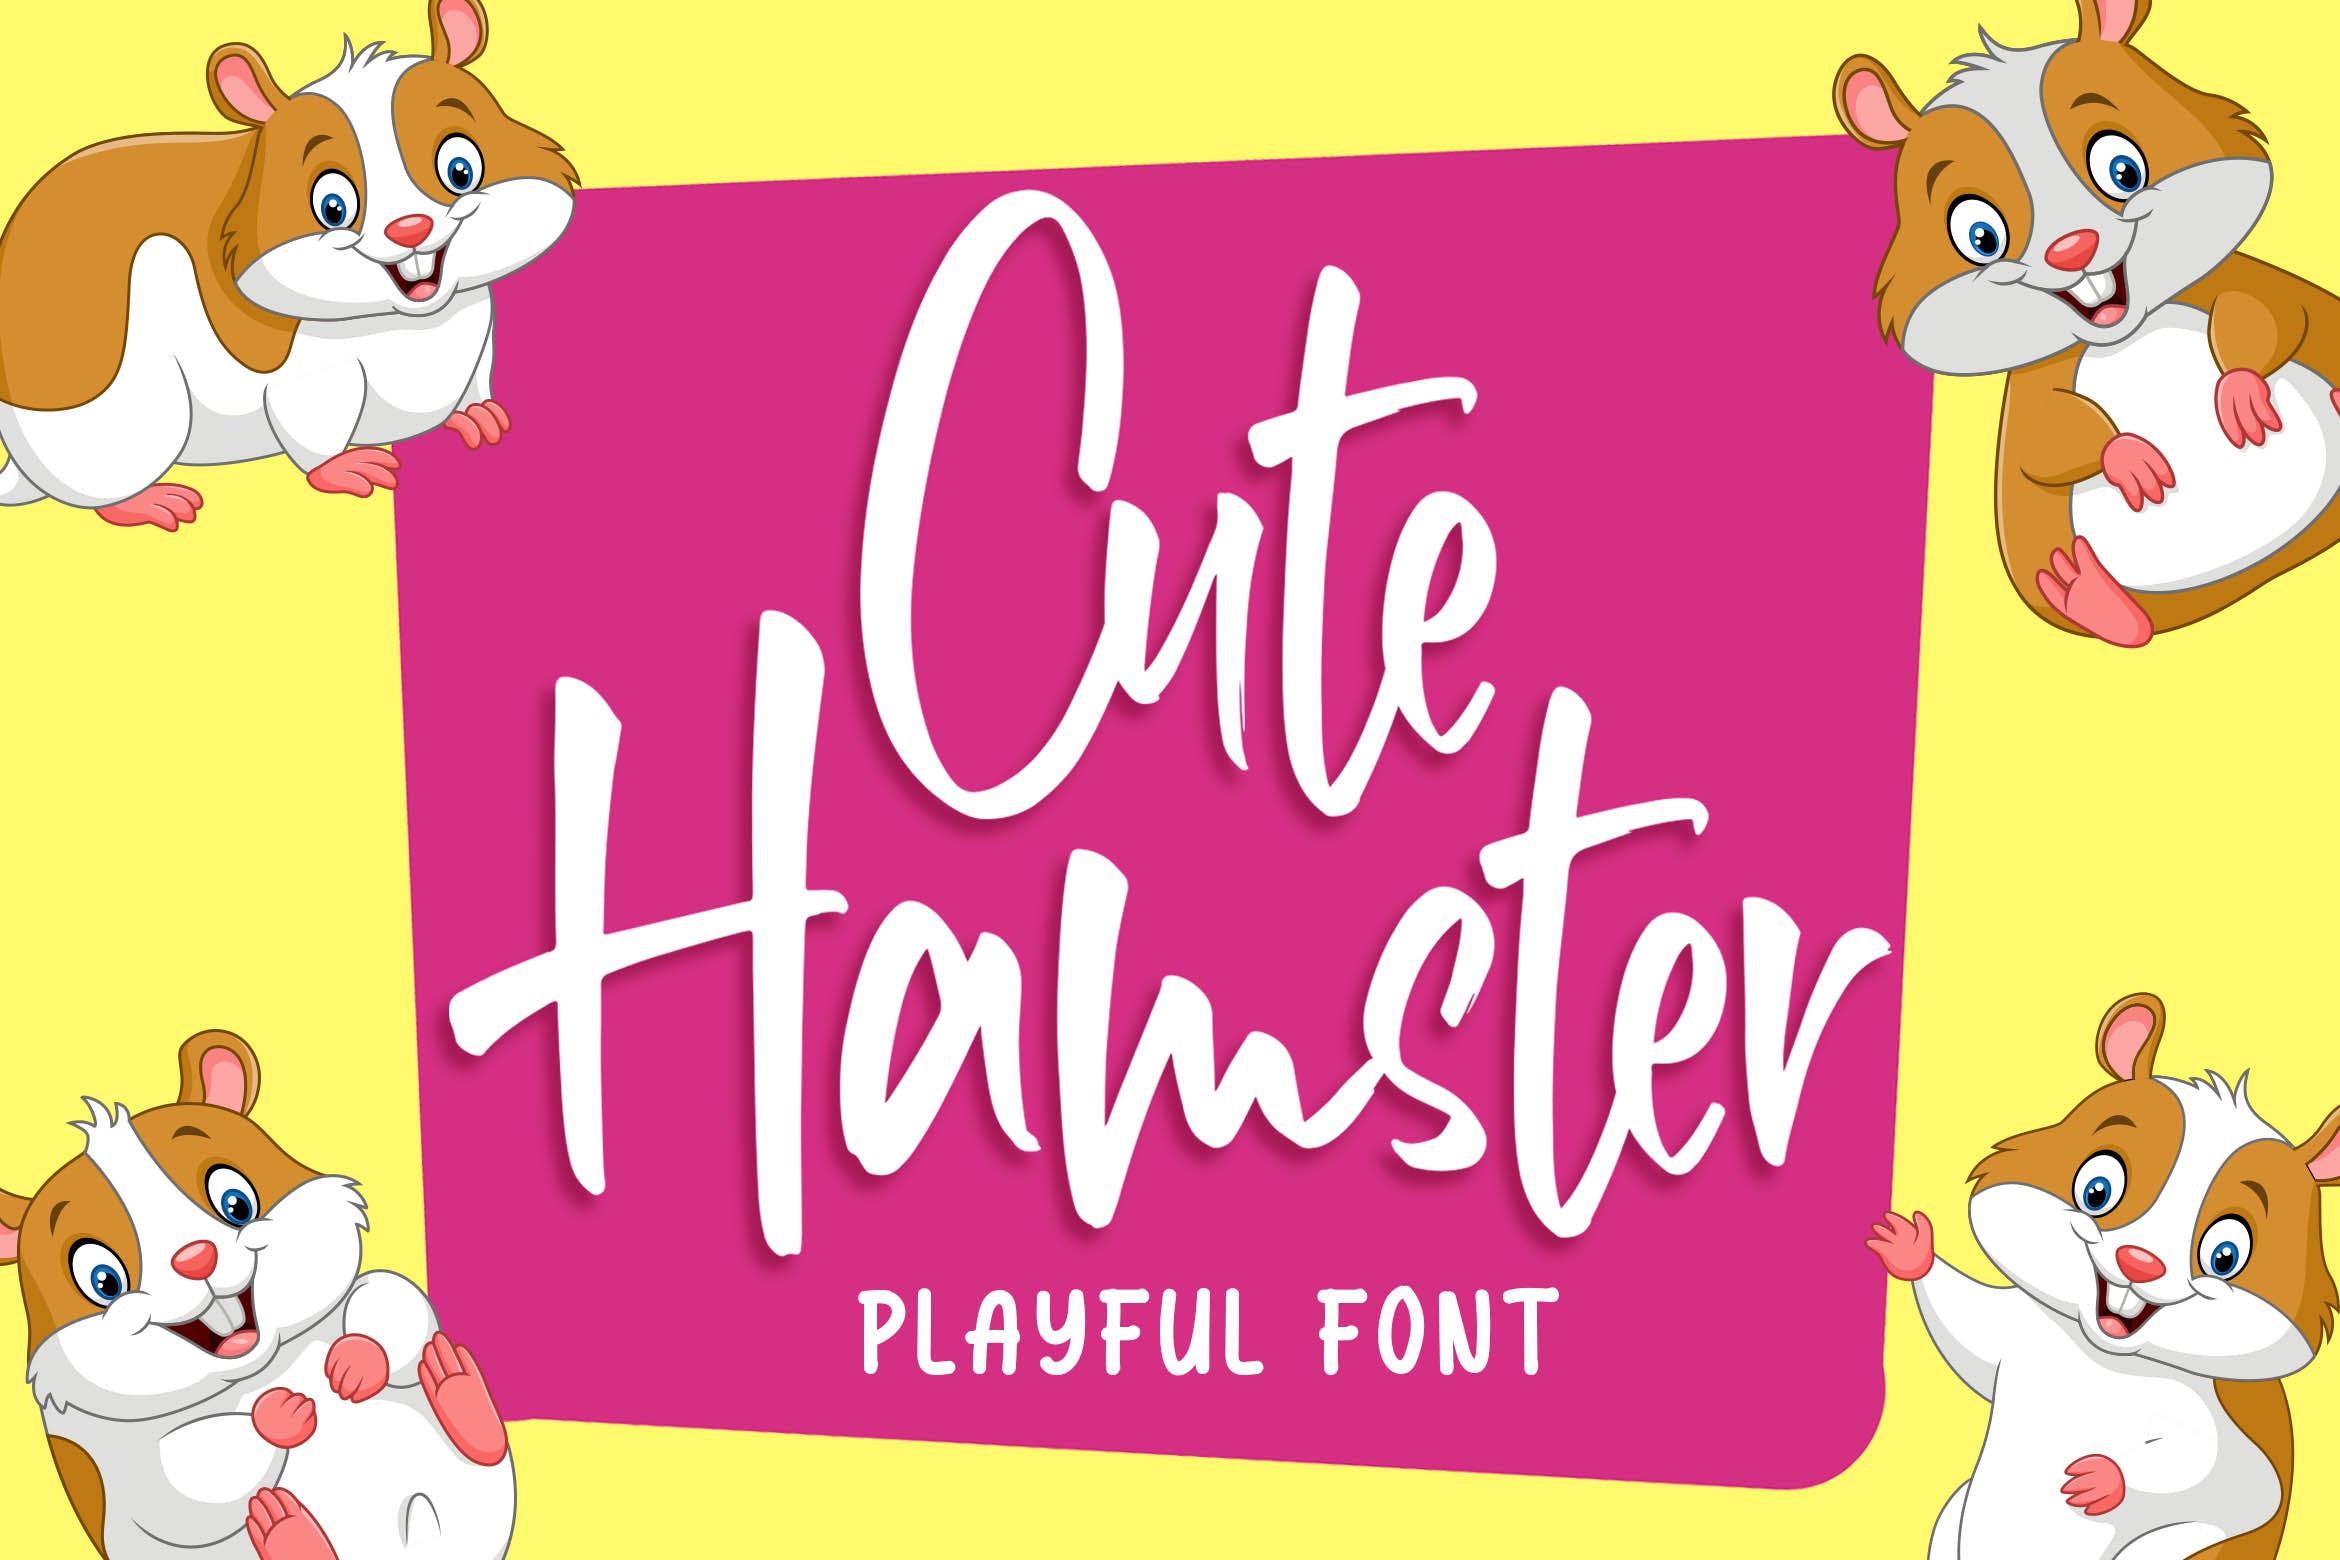 俏皮可爱风格英文手写装饰字体16设计素材网精选 Cute Hamster – Playful Font插图